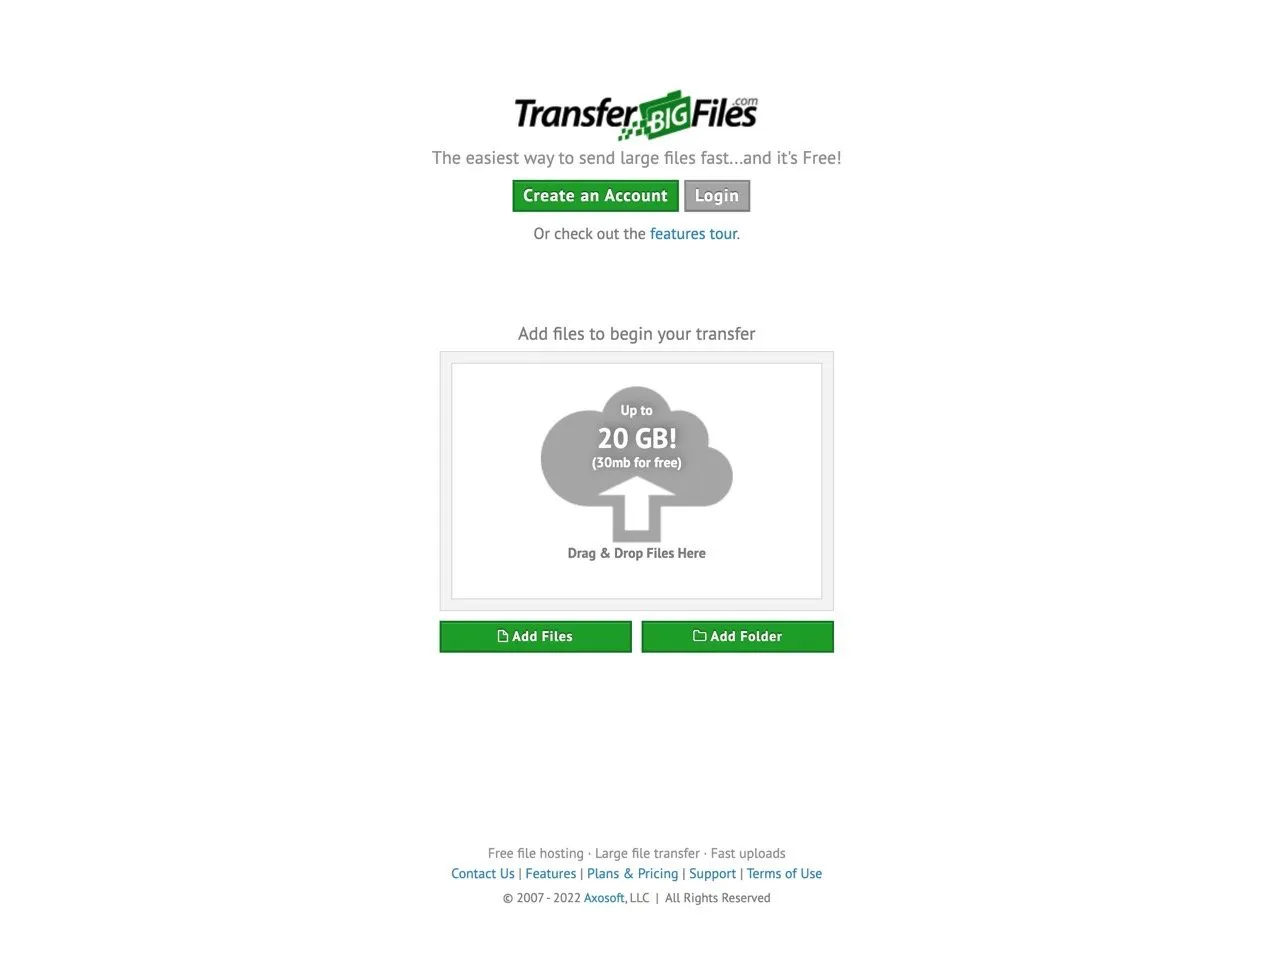 TransferBigFiles 超过 15 年老牌免费空间，上传文件将分享网址寄到信箱